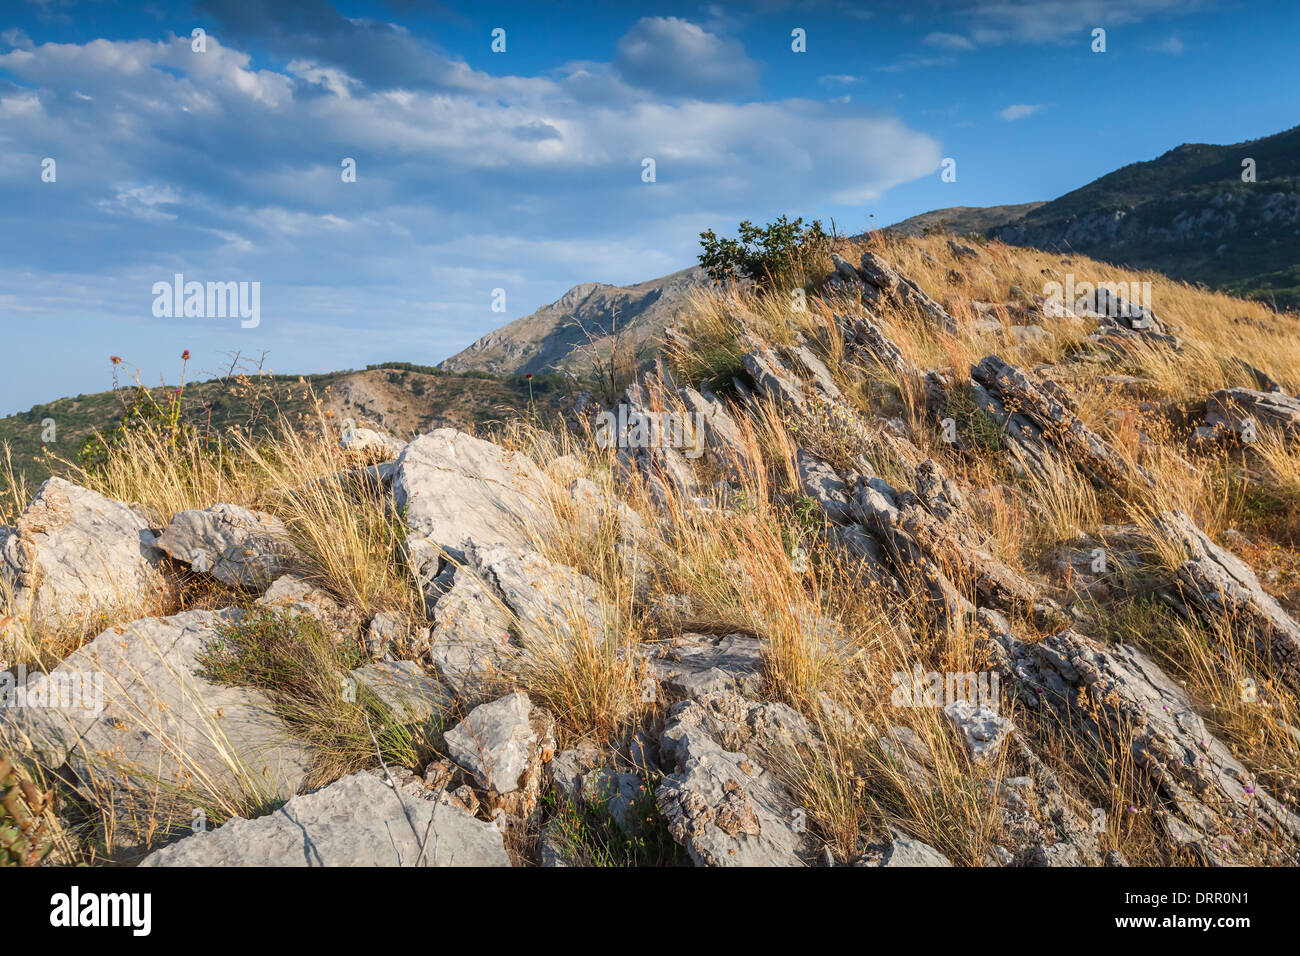 Le Monténégro. Paysage de montagne avec de l'herbe sèche qui poussent sur la roche Banque D'Images